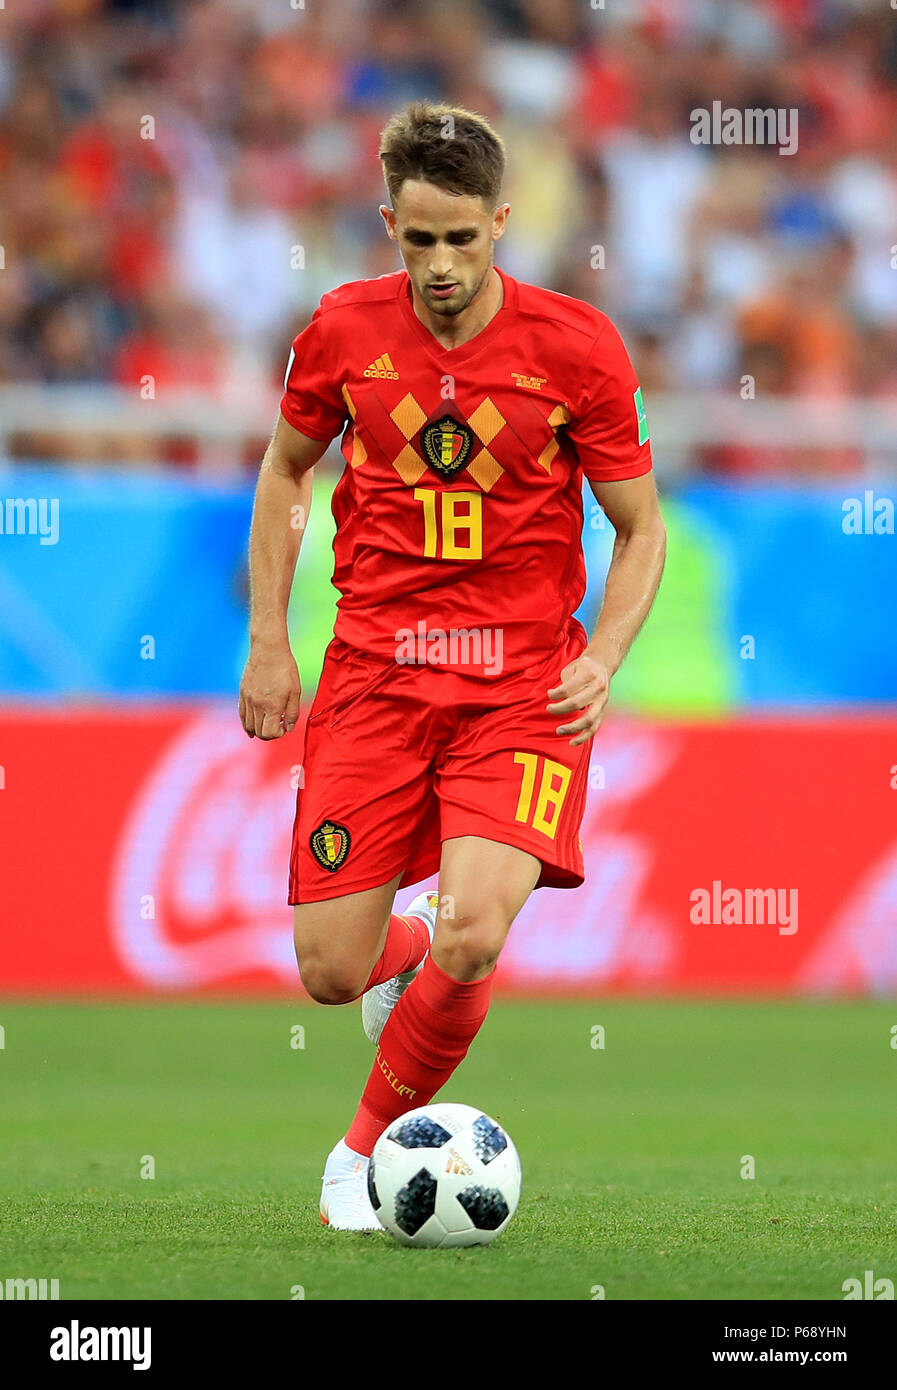 Belgium's Adnan Januzaj during the FIFA World Cup Group G match at Kaliningrad Stadium. Stock Photo